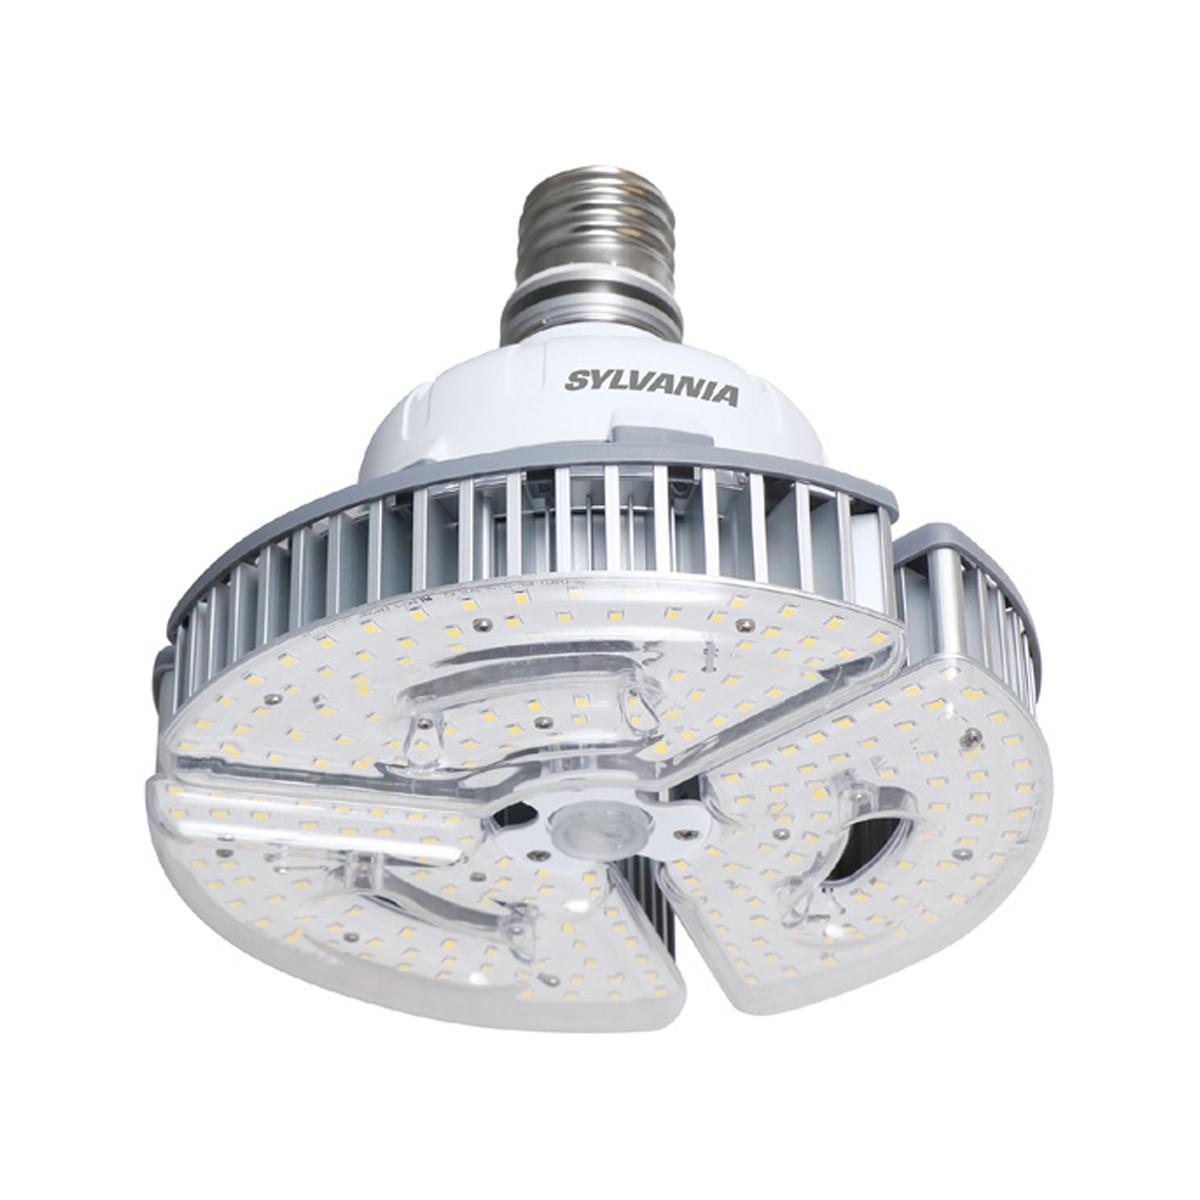 LED High Bay Retrofit Lamp, 60W, 8400 Lumens, 4000K, EX39 Mogul Extended Mogul Base, 120-277V